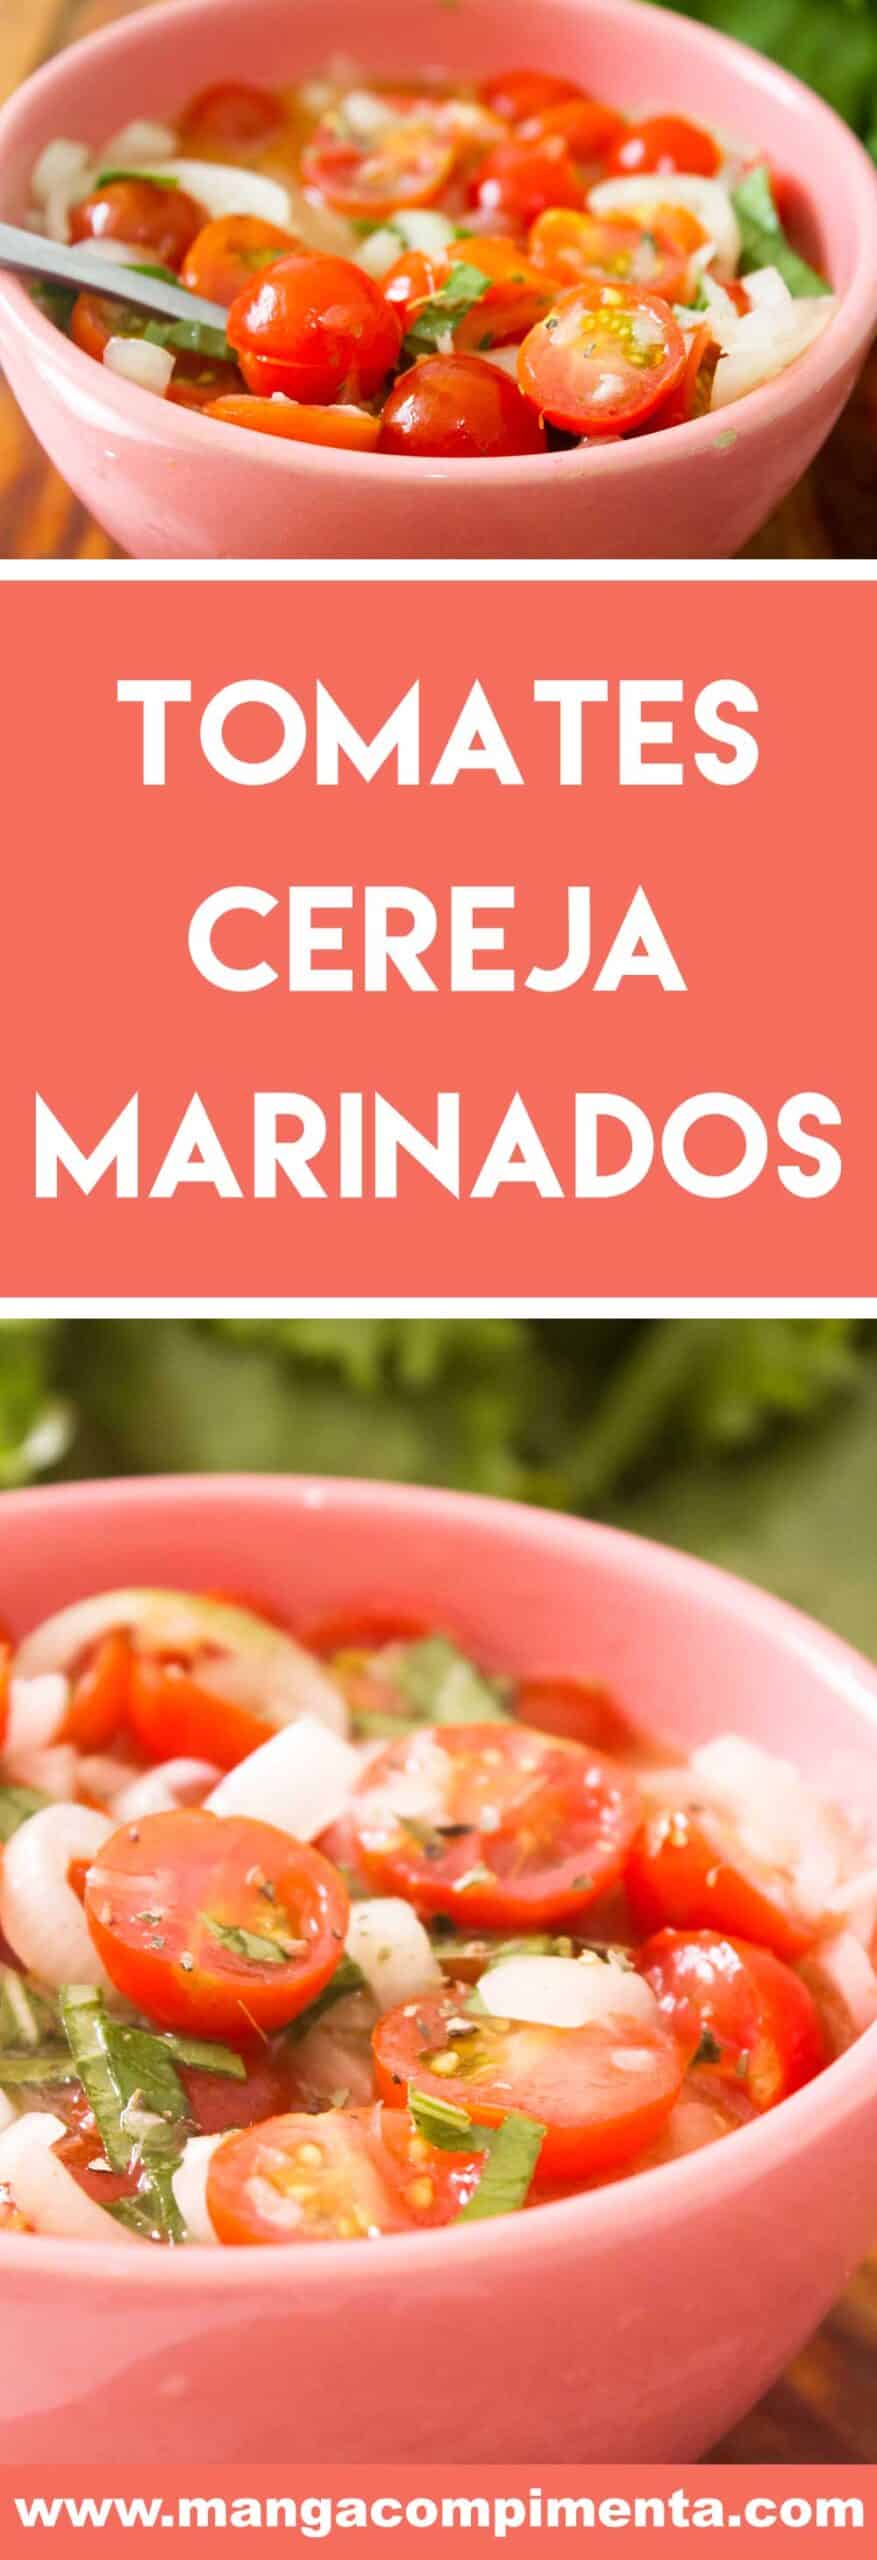 Receita de Tomates Cereja Marinados - prepare nos dias quentes de verão!